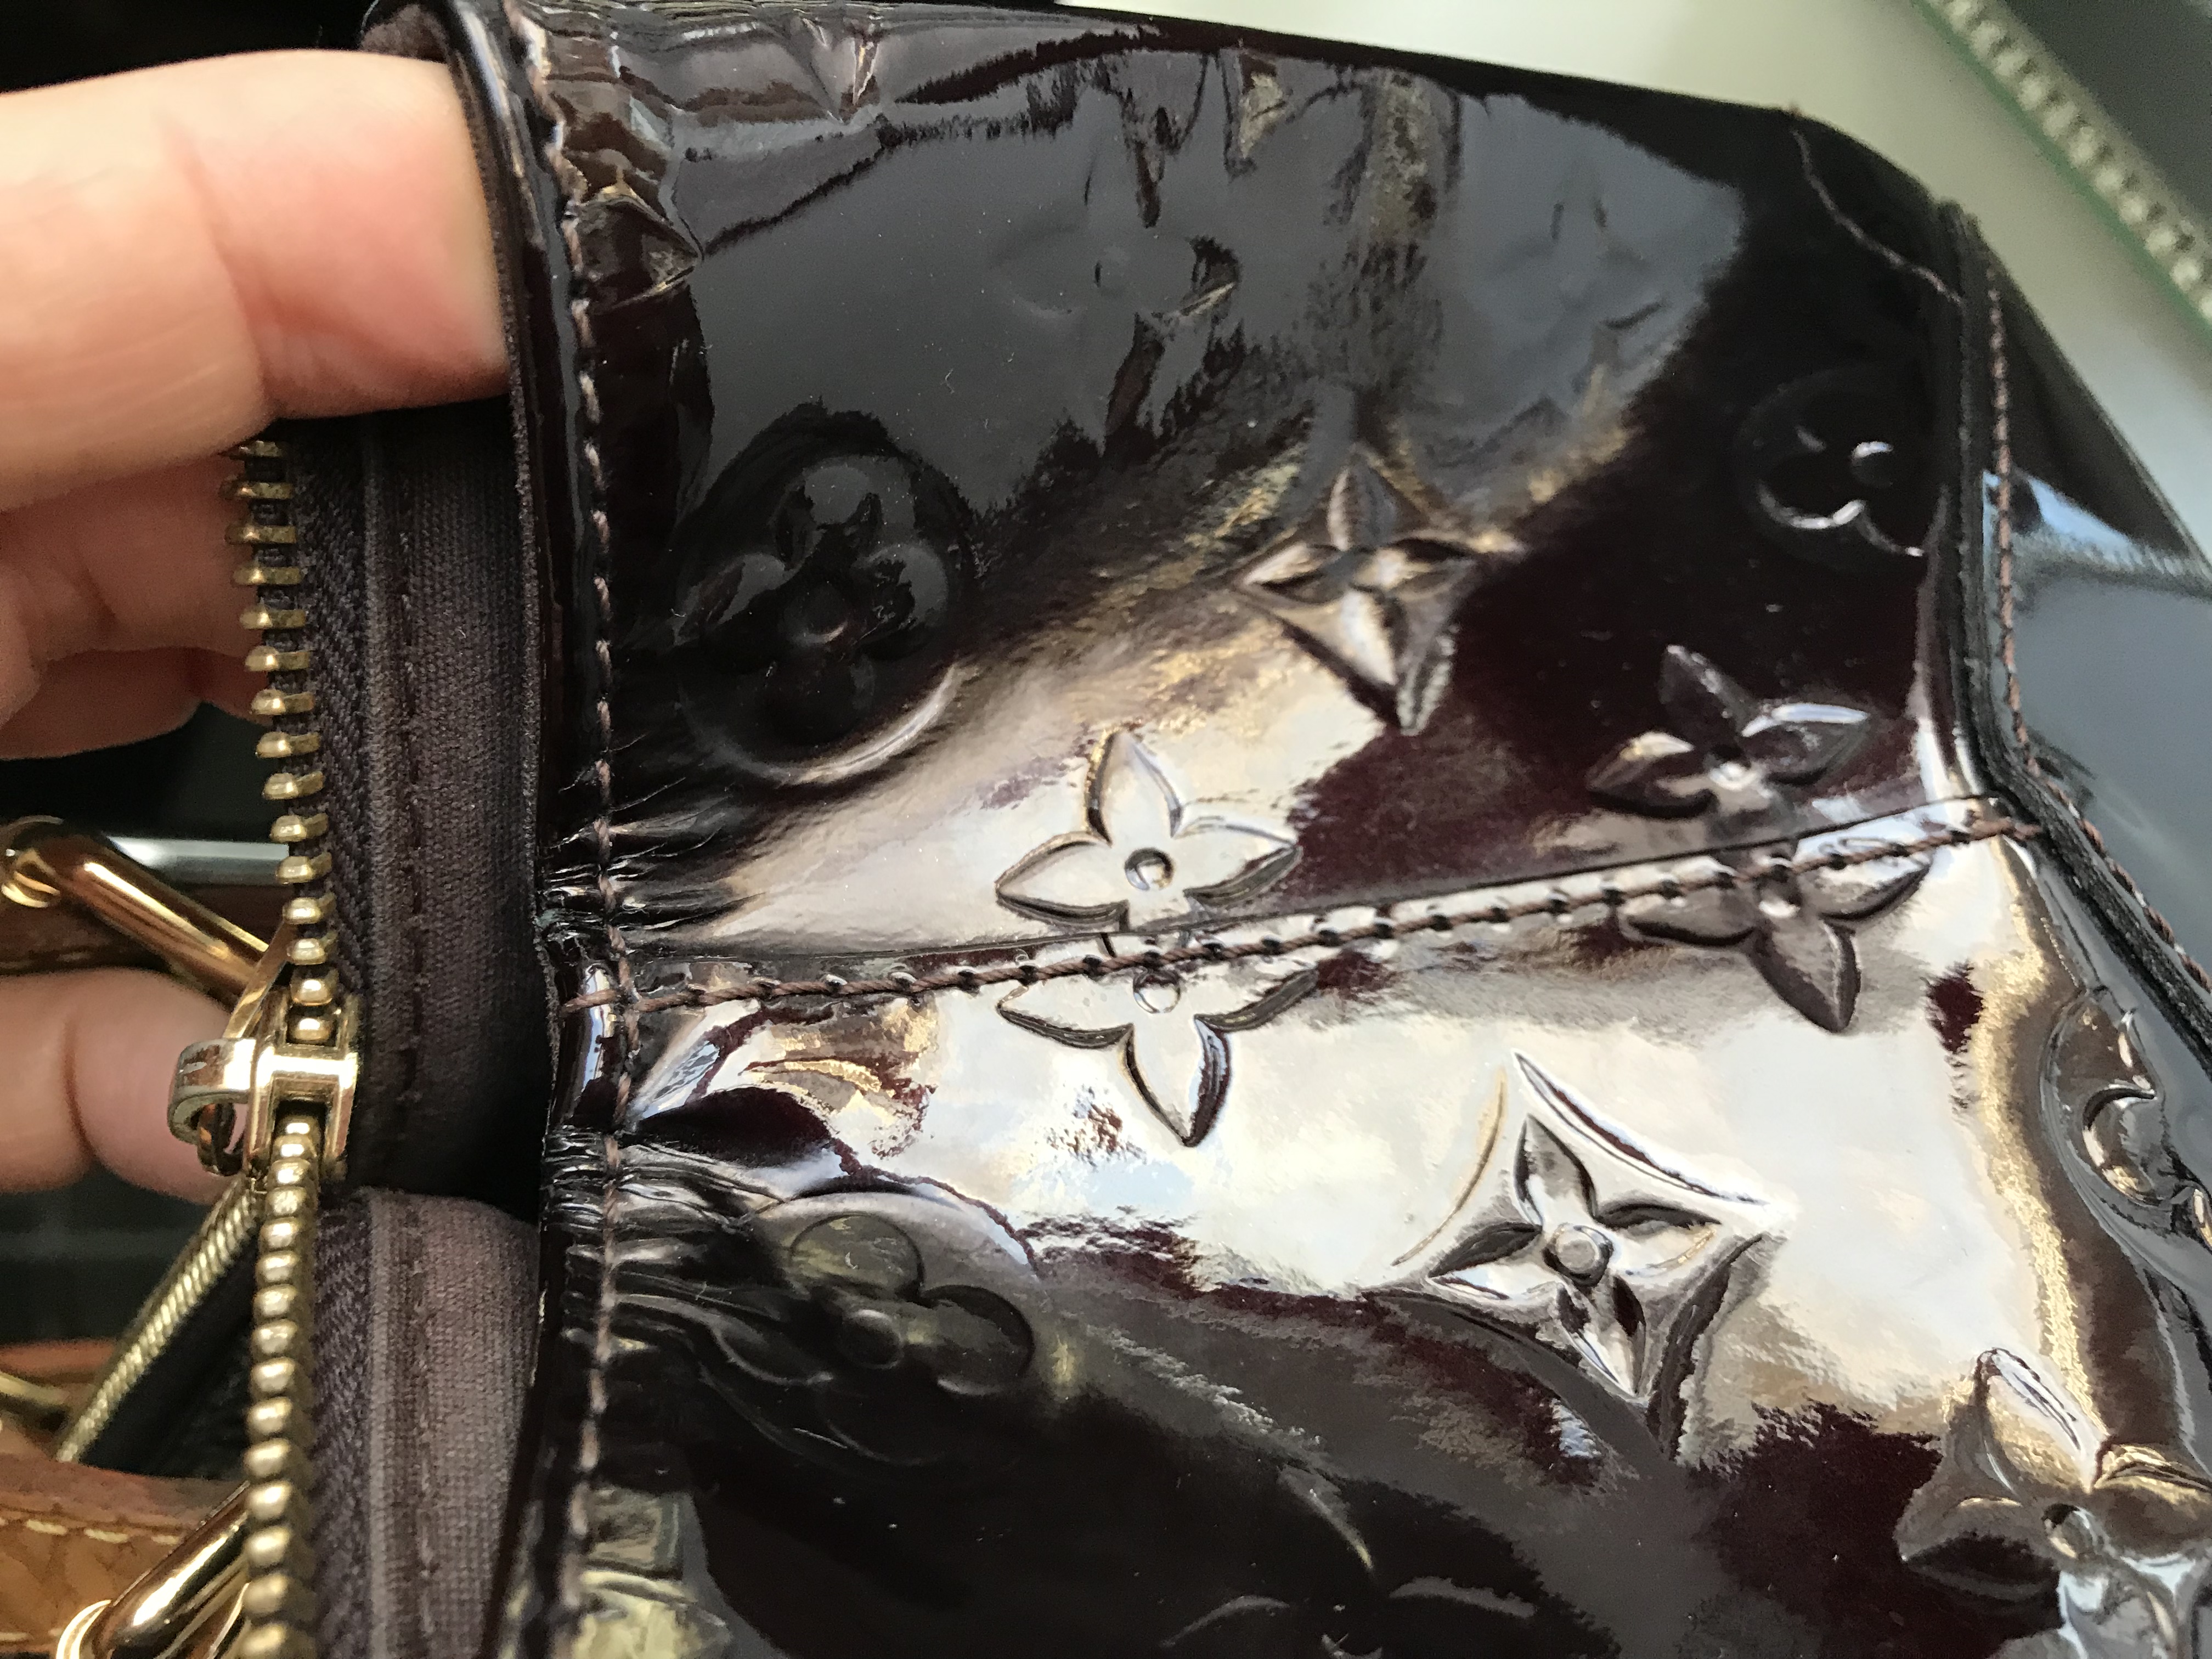 Authentic Louis Vuitton vernis Rosewood Avenue Patent Leather Satchel  Bag-$1800